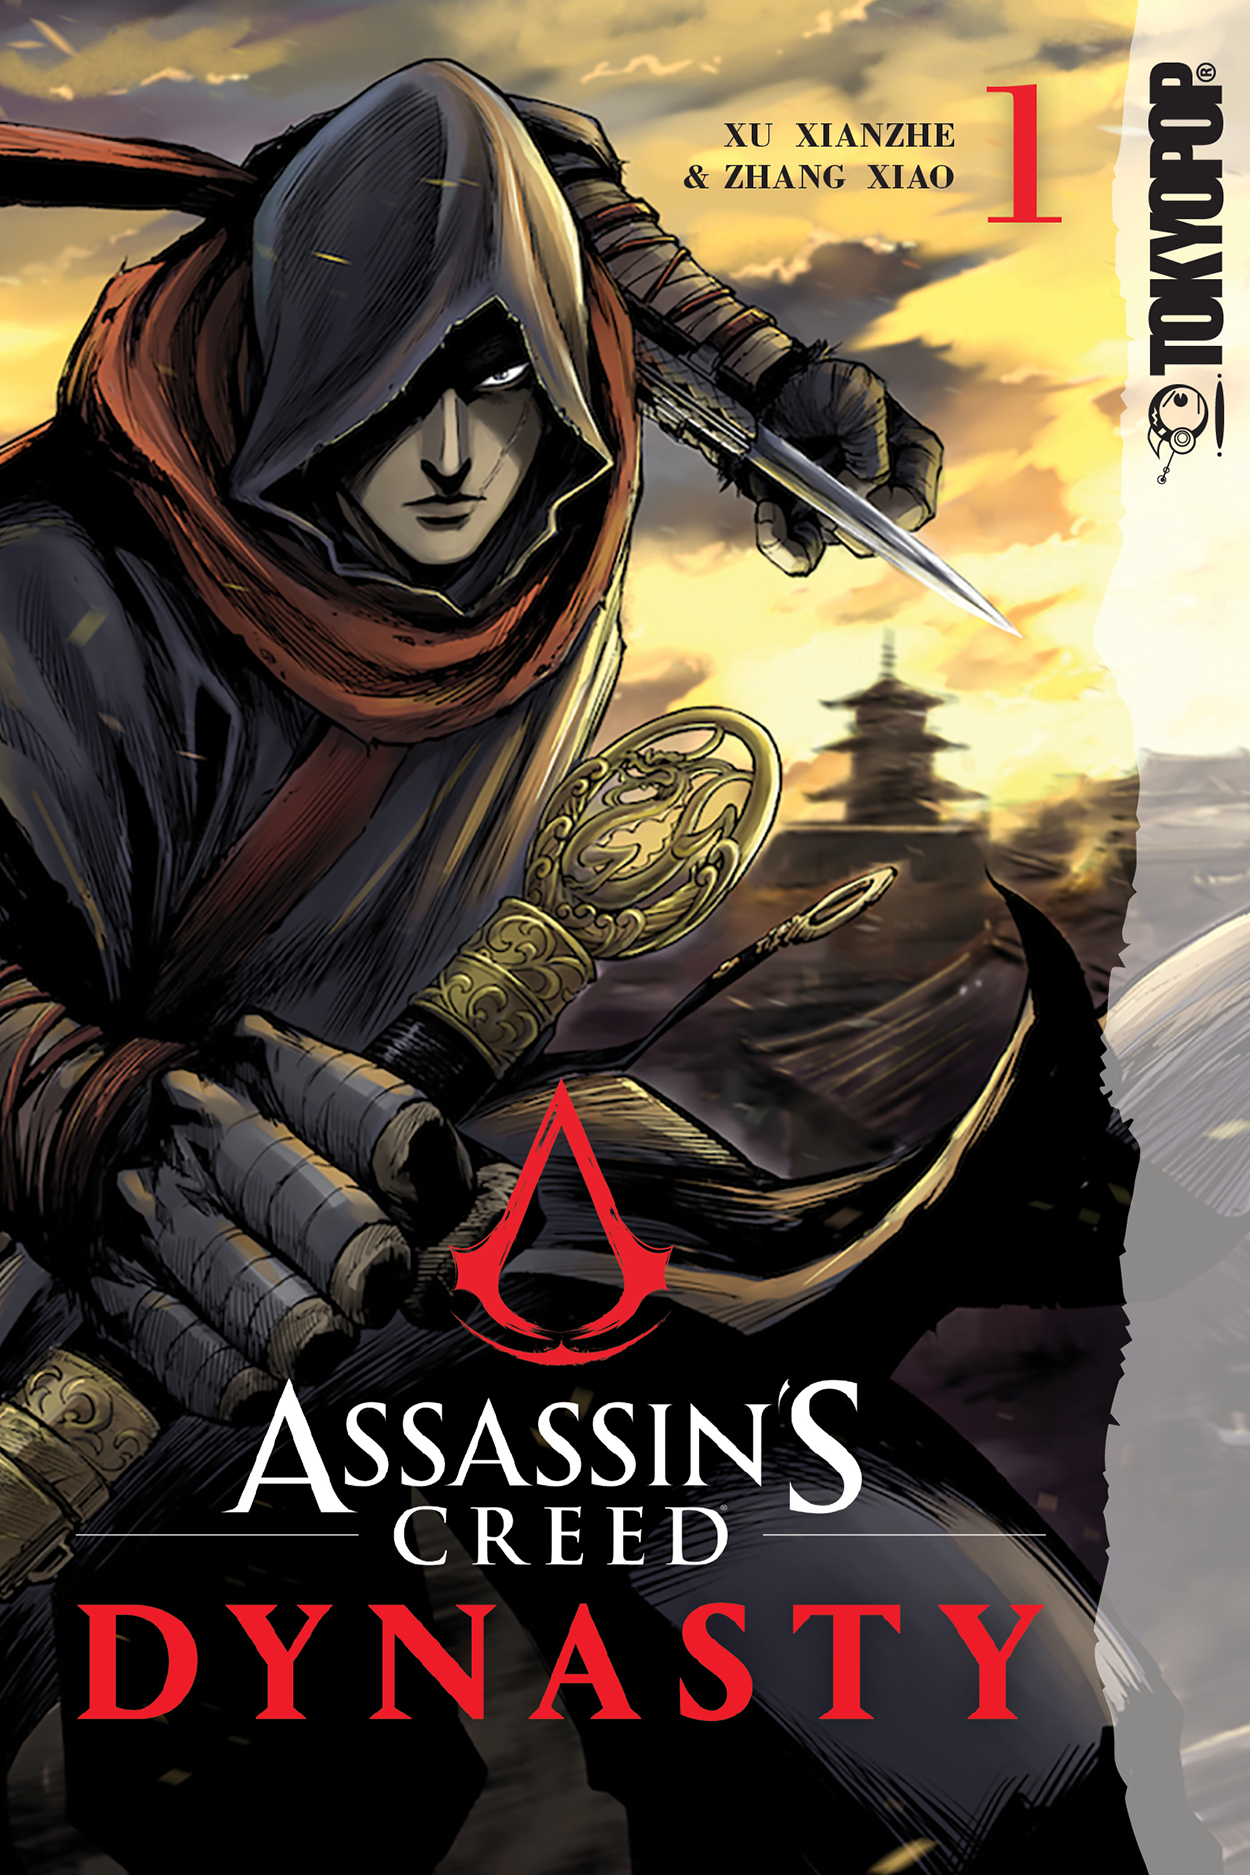 Cómic de Assassin's Creed alcanza mil millones de visitas